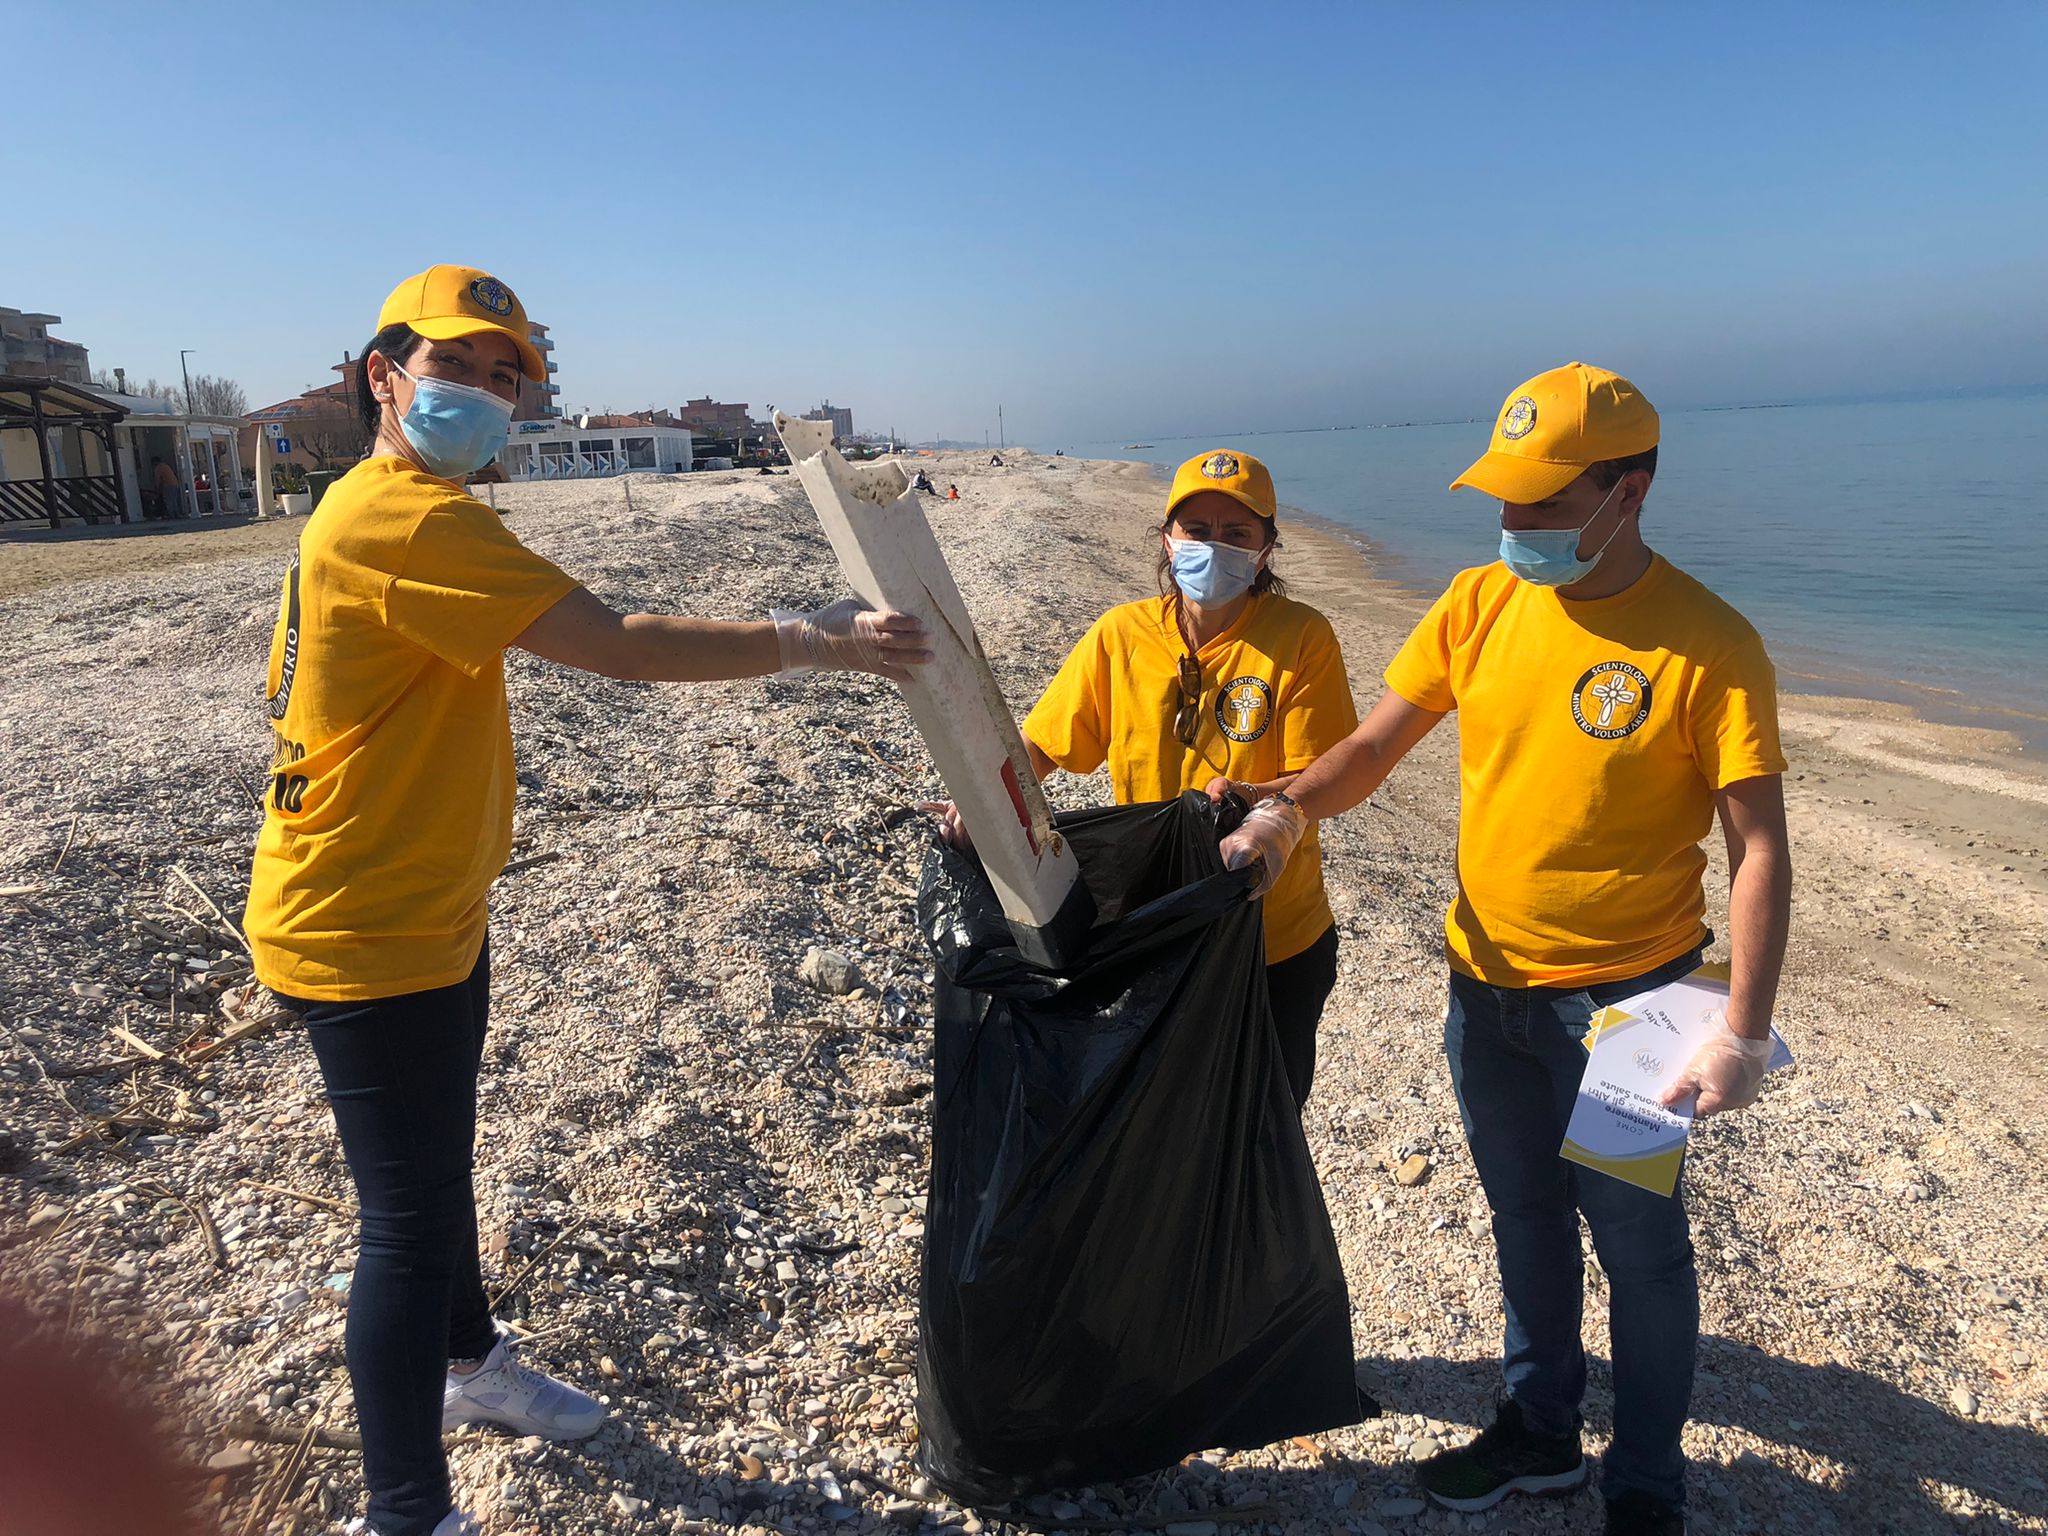 Marotta: Volontari attivi per ridurre i danni della plastica abbandonata sulla spiaggia